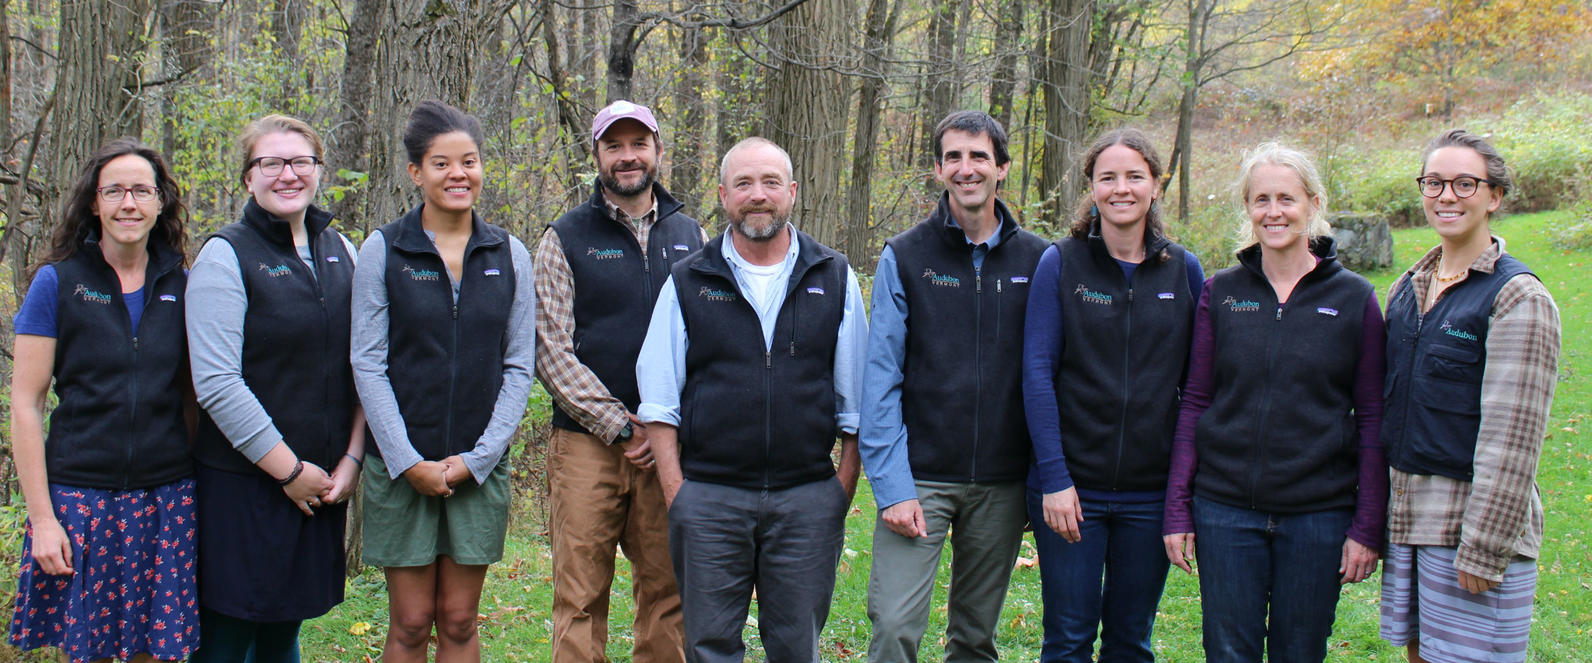 Audubon Vermont Staff